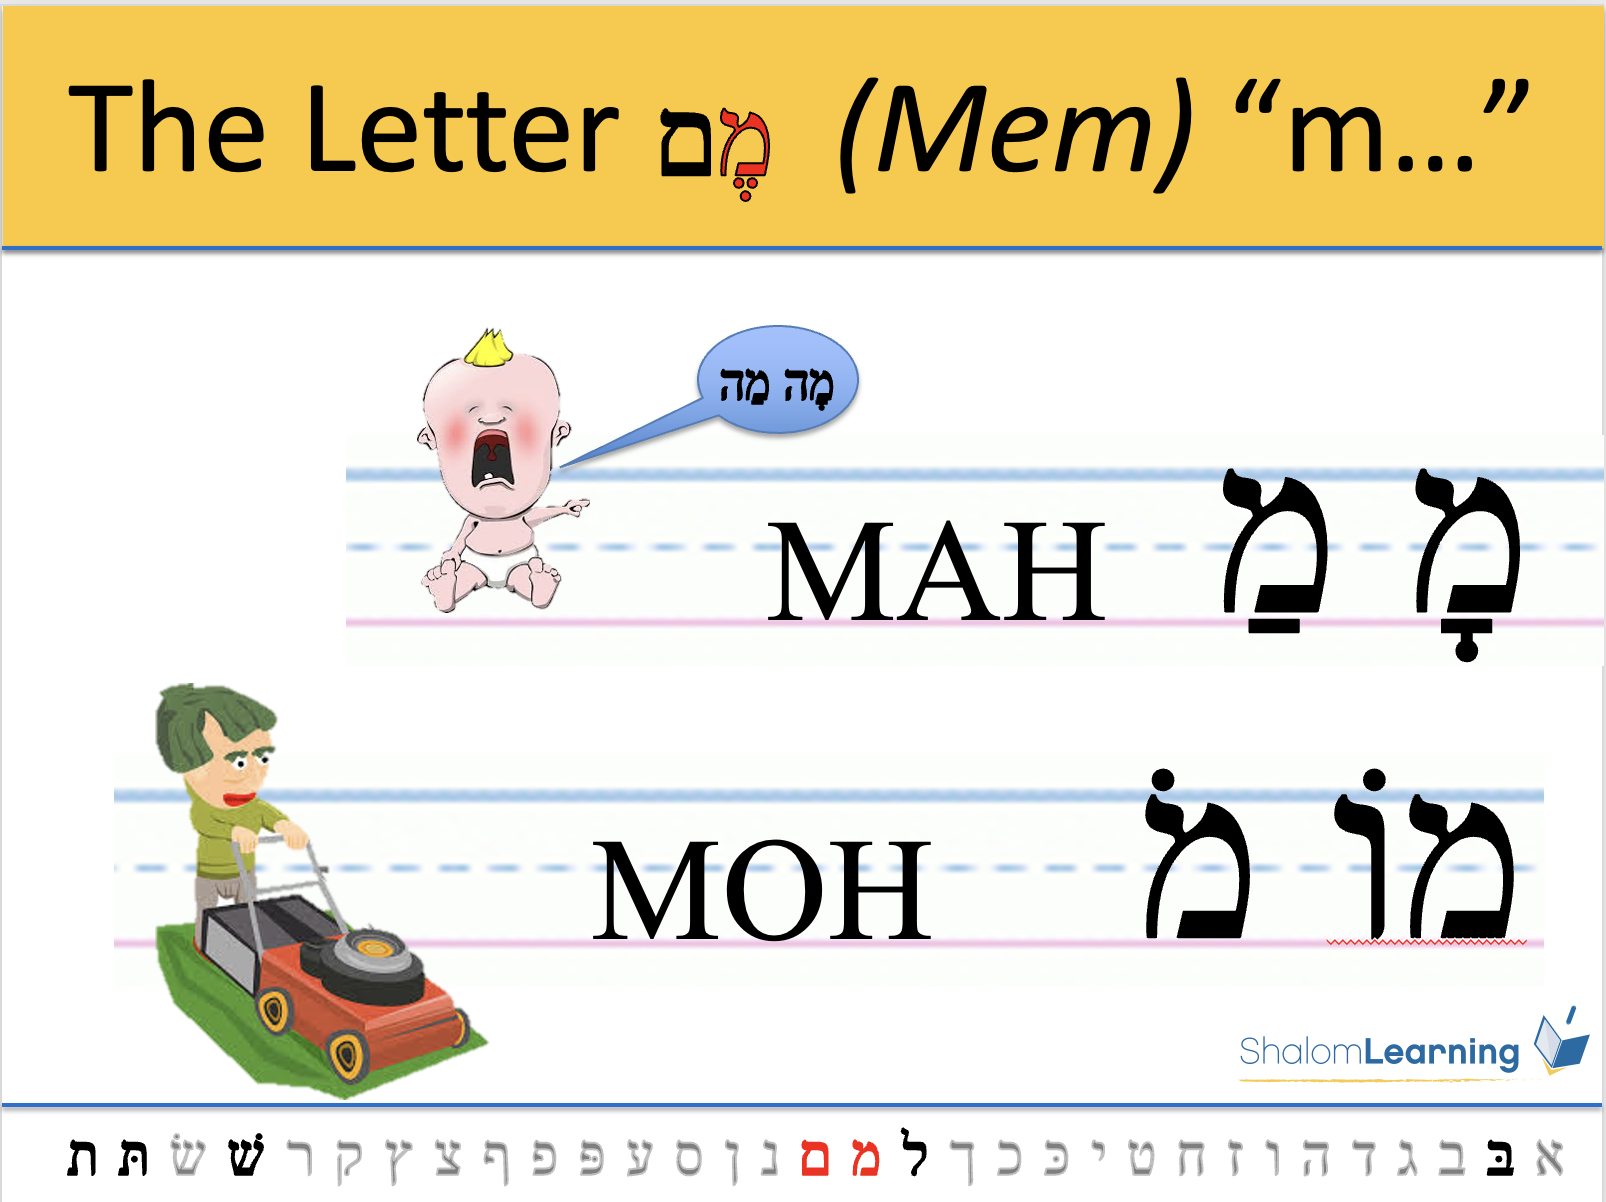 torah aura sample slide describing the letter Mem